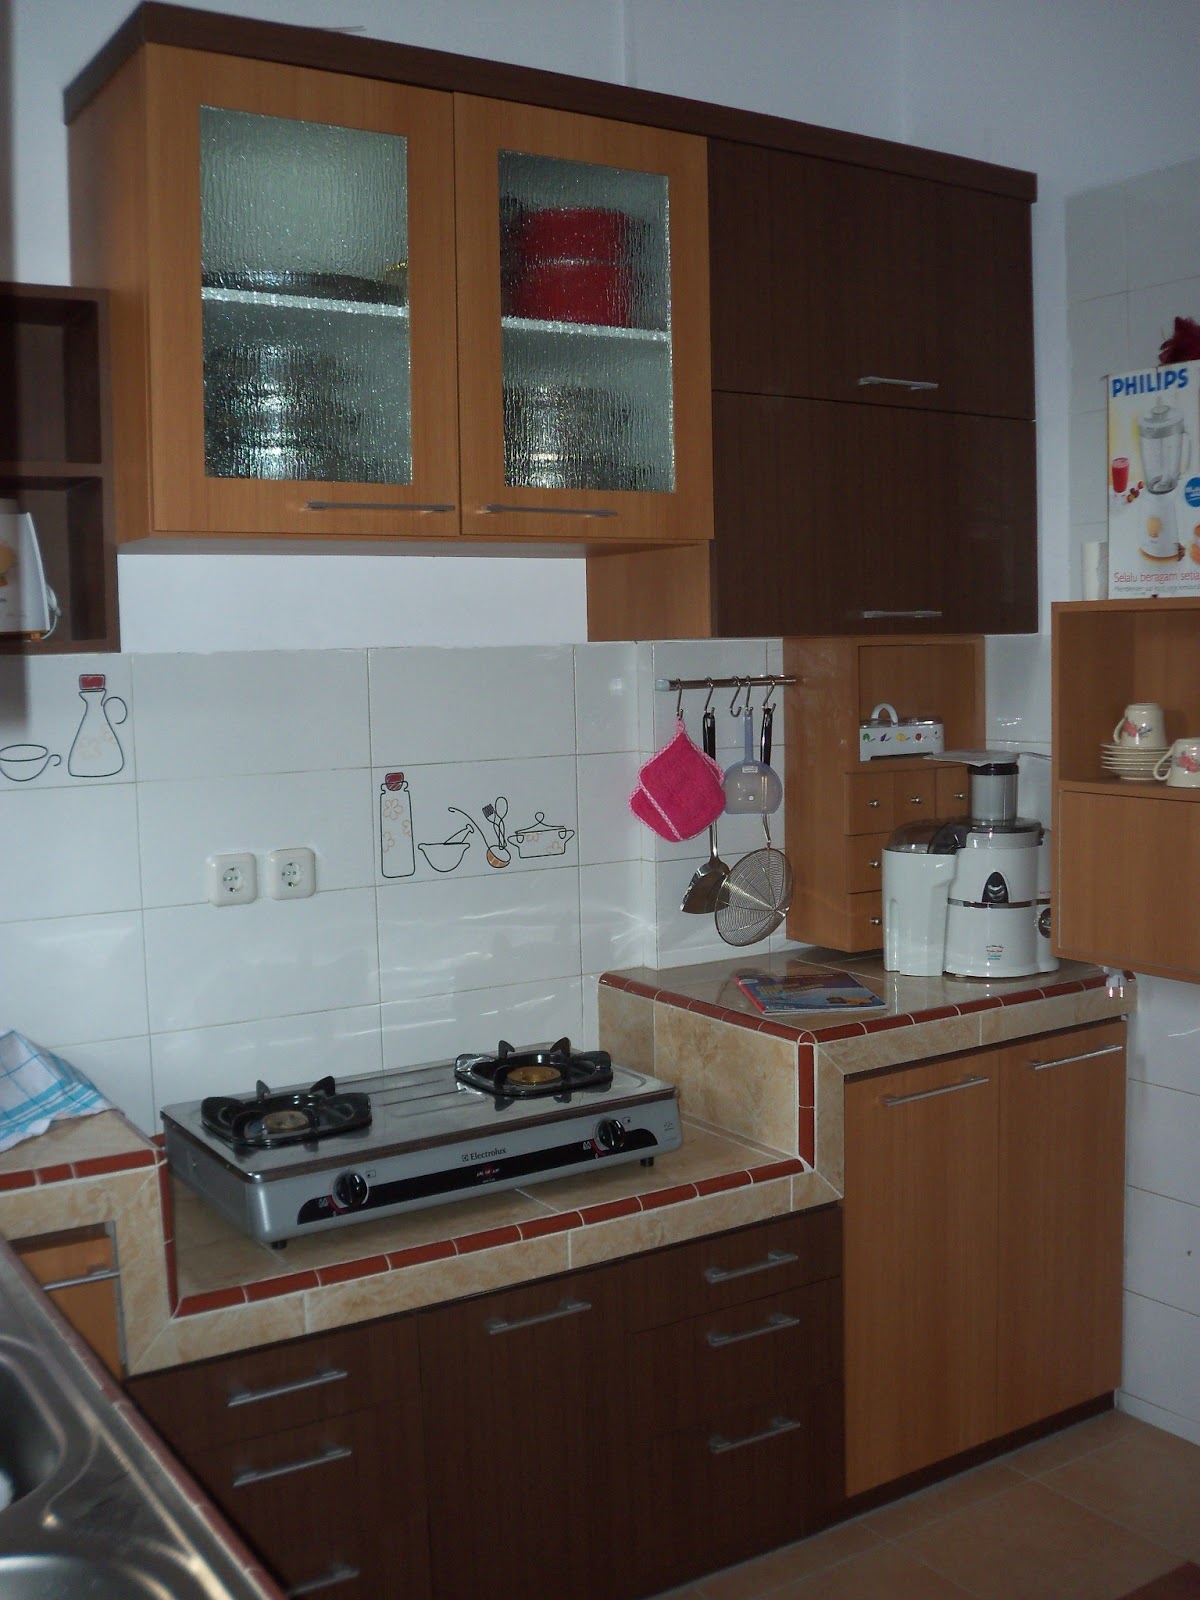 Ciptakan nyaman di dapur dengan kitchen set yang kompak 